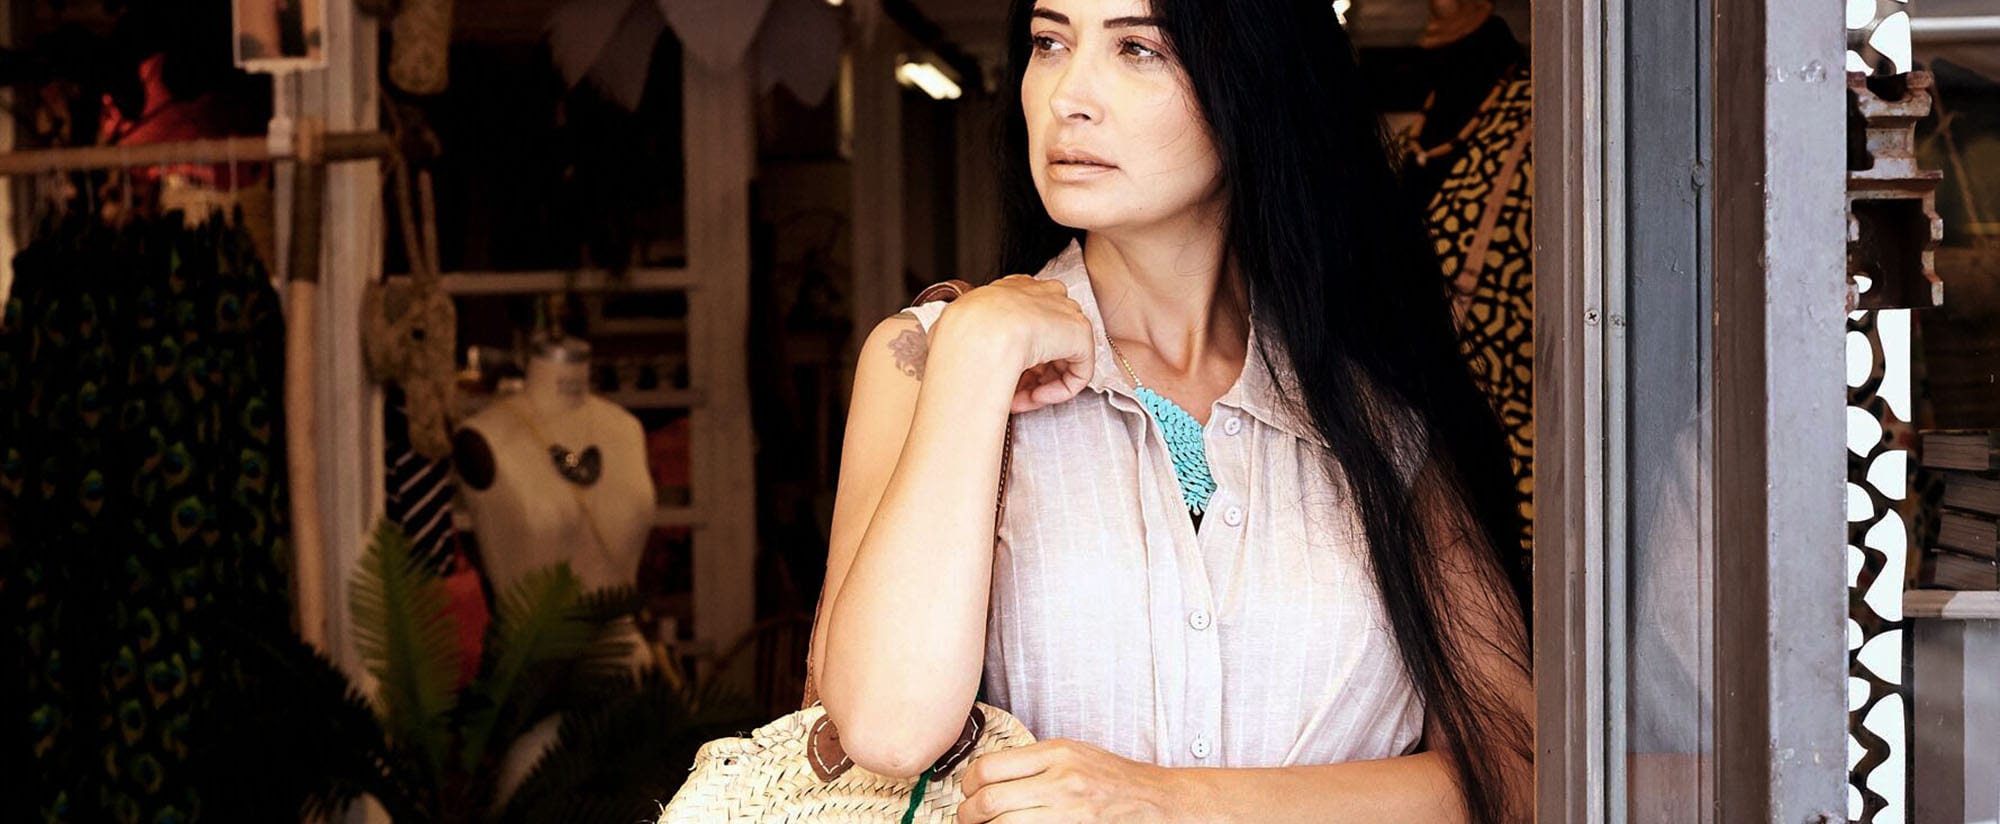 אופנה, מאיה אושרי כהן, שמלת יעלה אבן, סל יבוא אישי ממרוקו קרן שביט צילום kim kandler